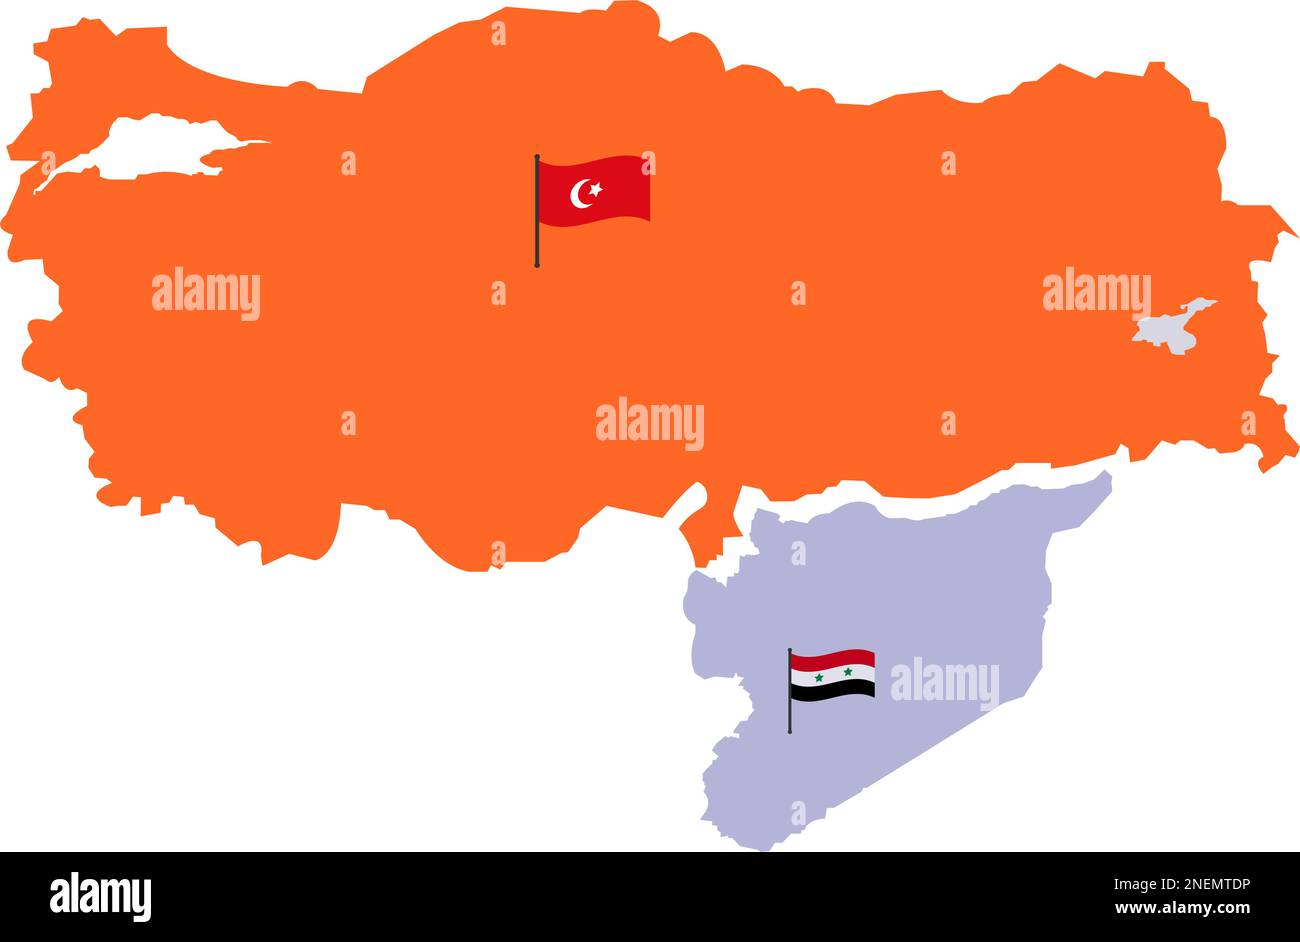 Mappa della Turchia e mappa della Siria con alta dettagliata. Mappa di tacchino riempita di colore arancione. Mappa siriana con colore rosso bianco e nero a tre colori e stella. Turco Illustrazione Vettoriale